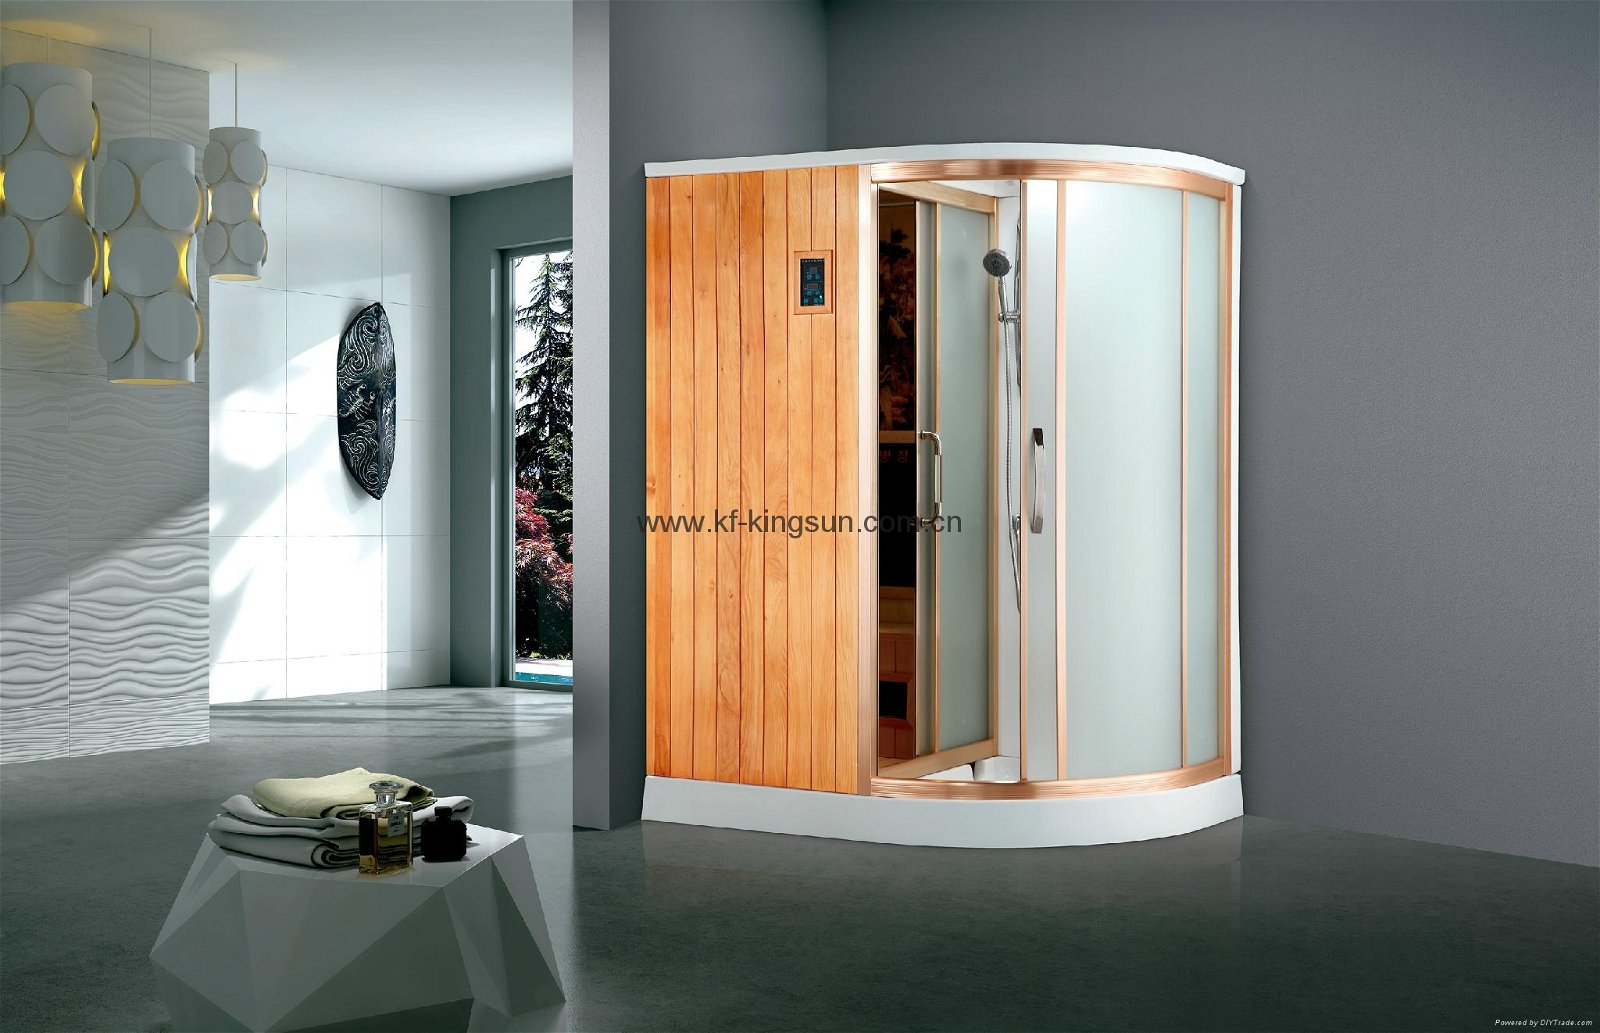  Wholesaler Luxury Custom Portable Steam Sauna Room